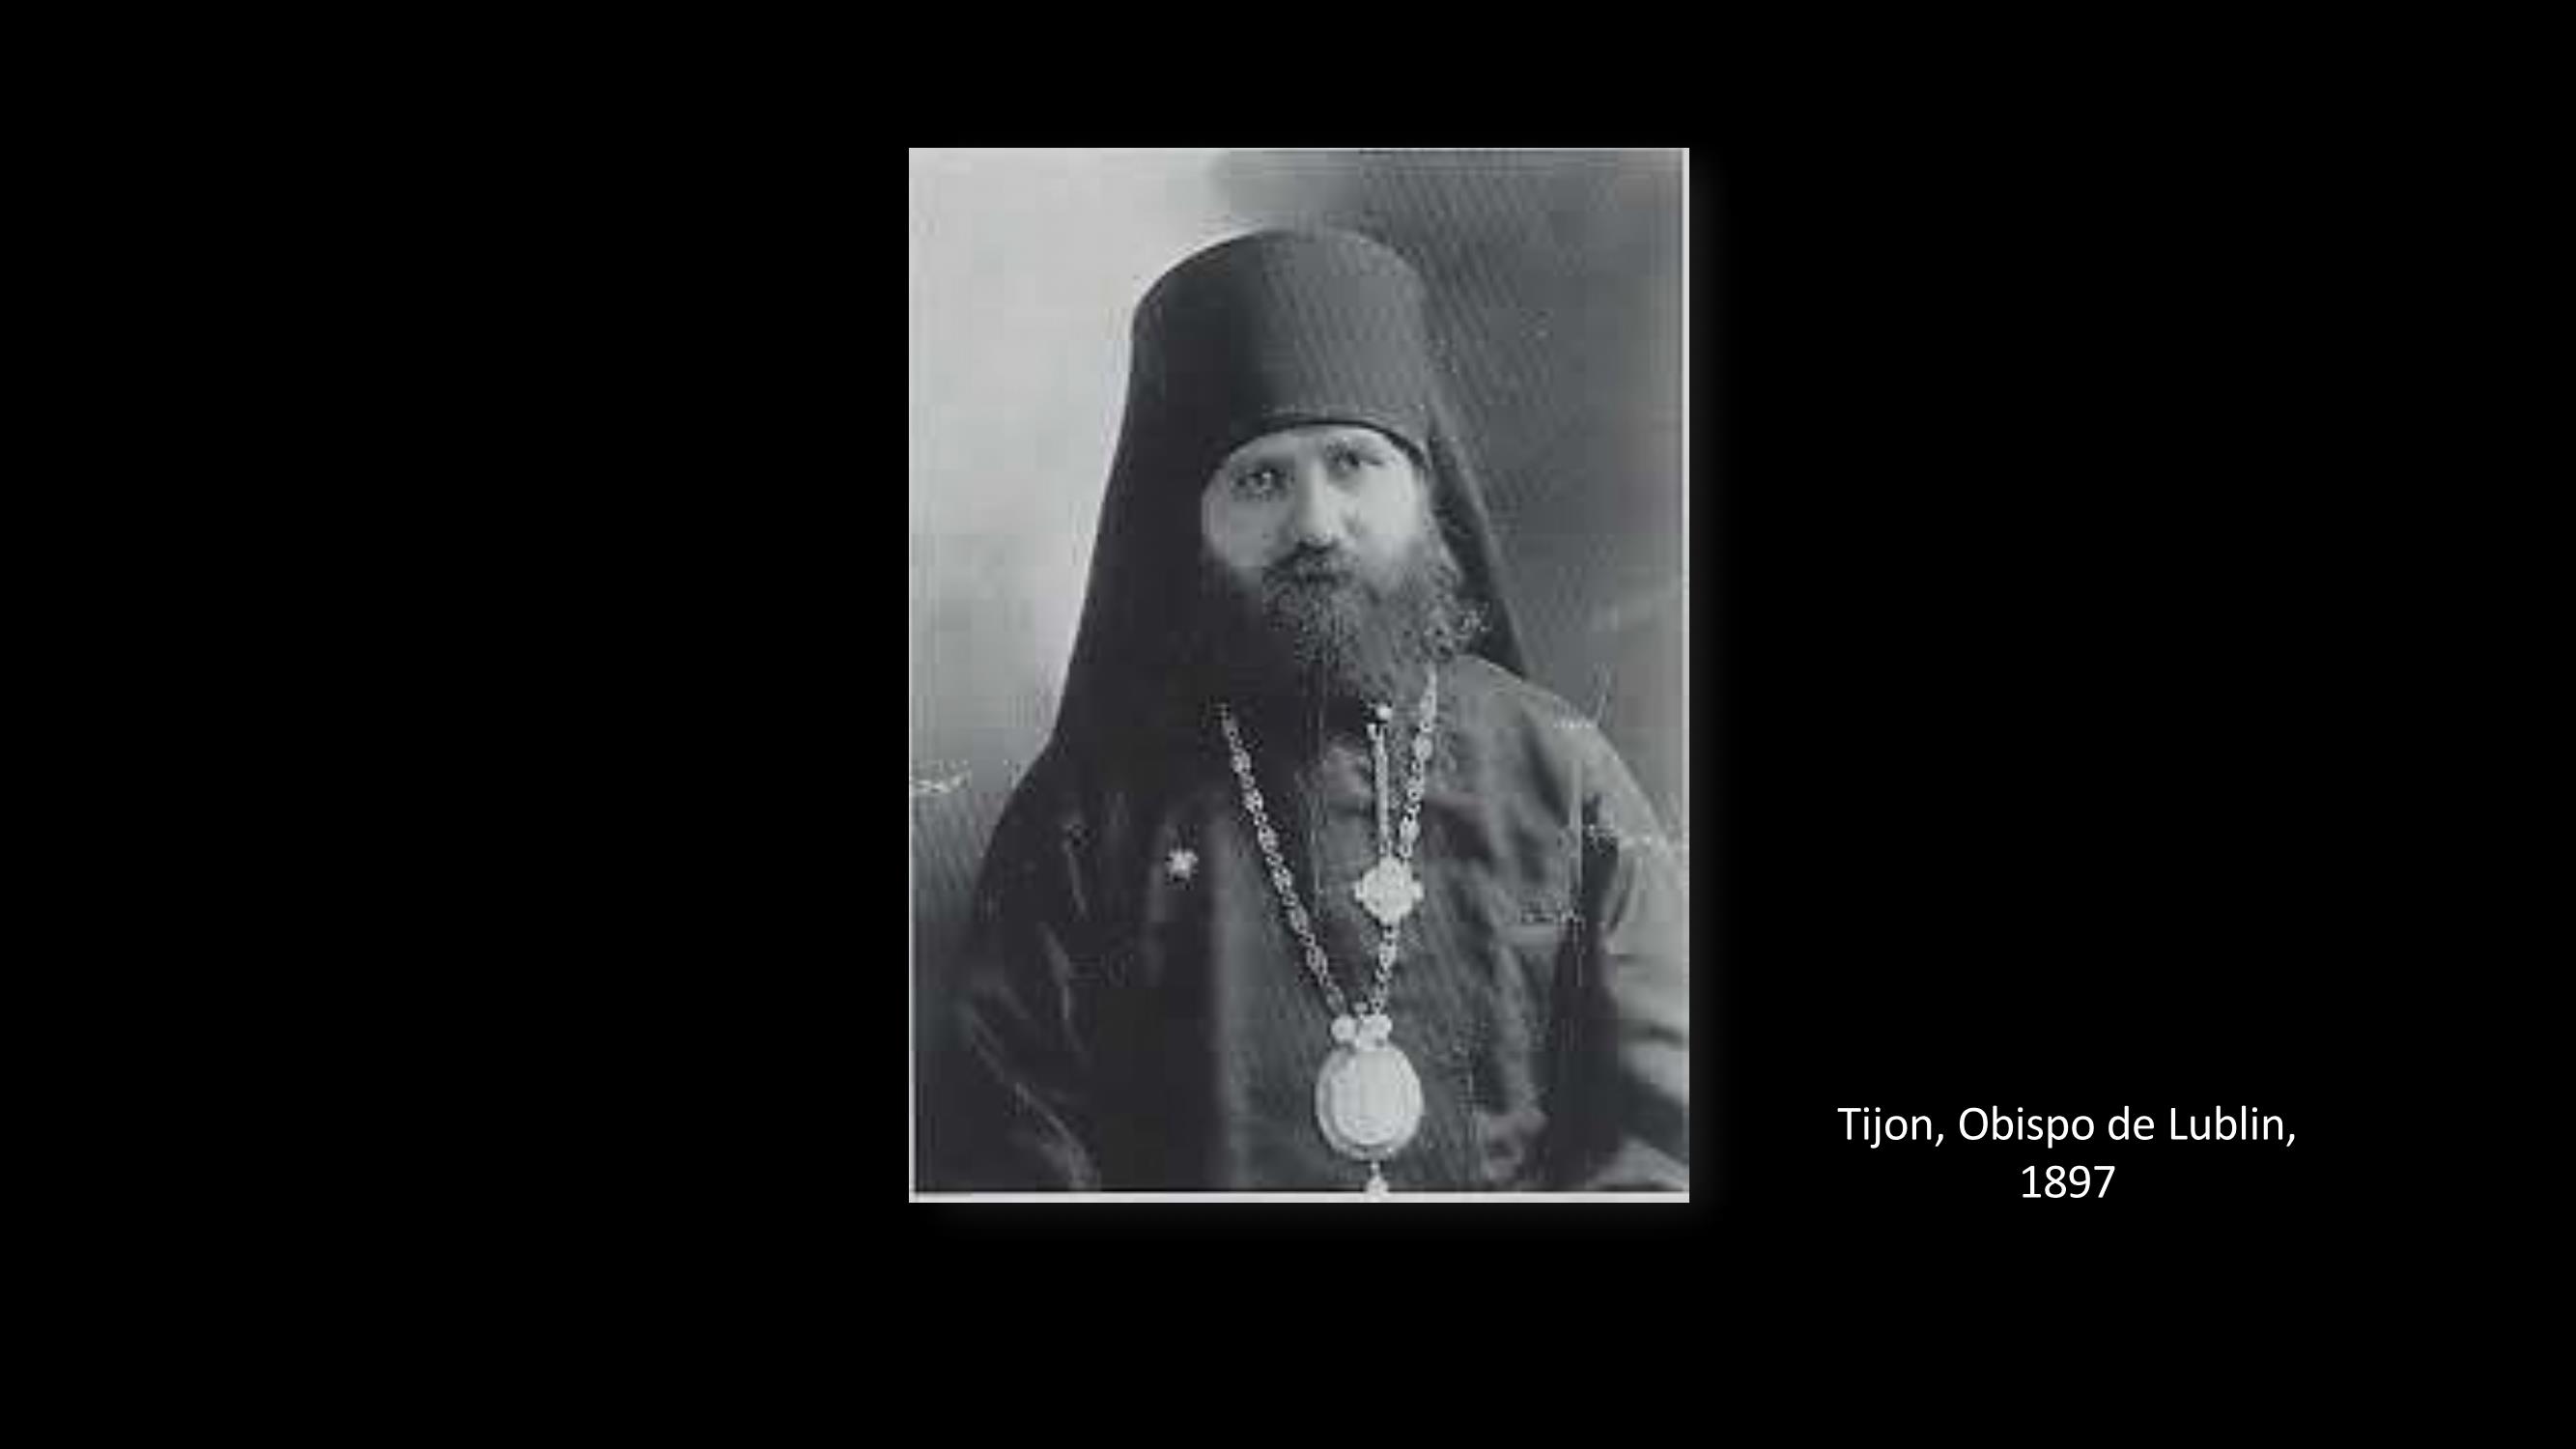 [4] Tírron, bispo de Lublin